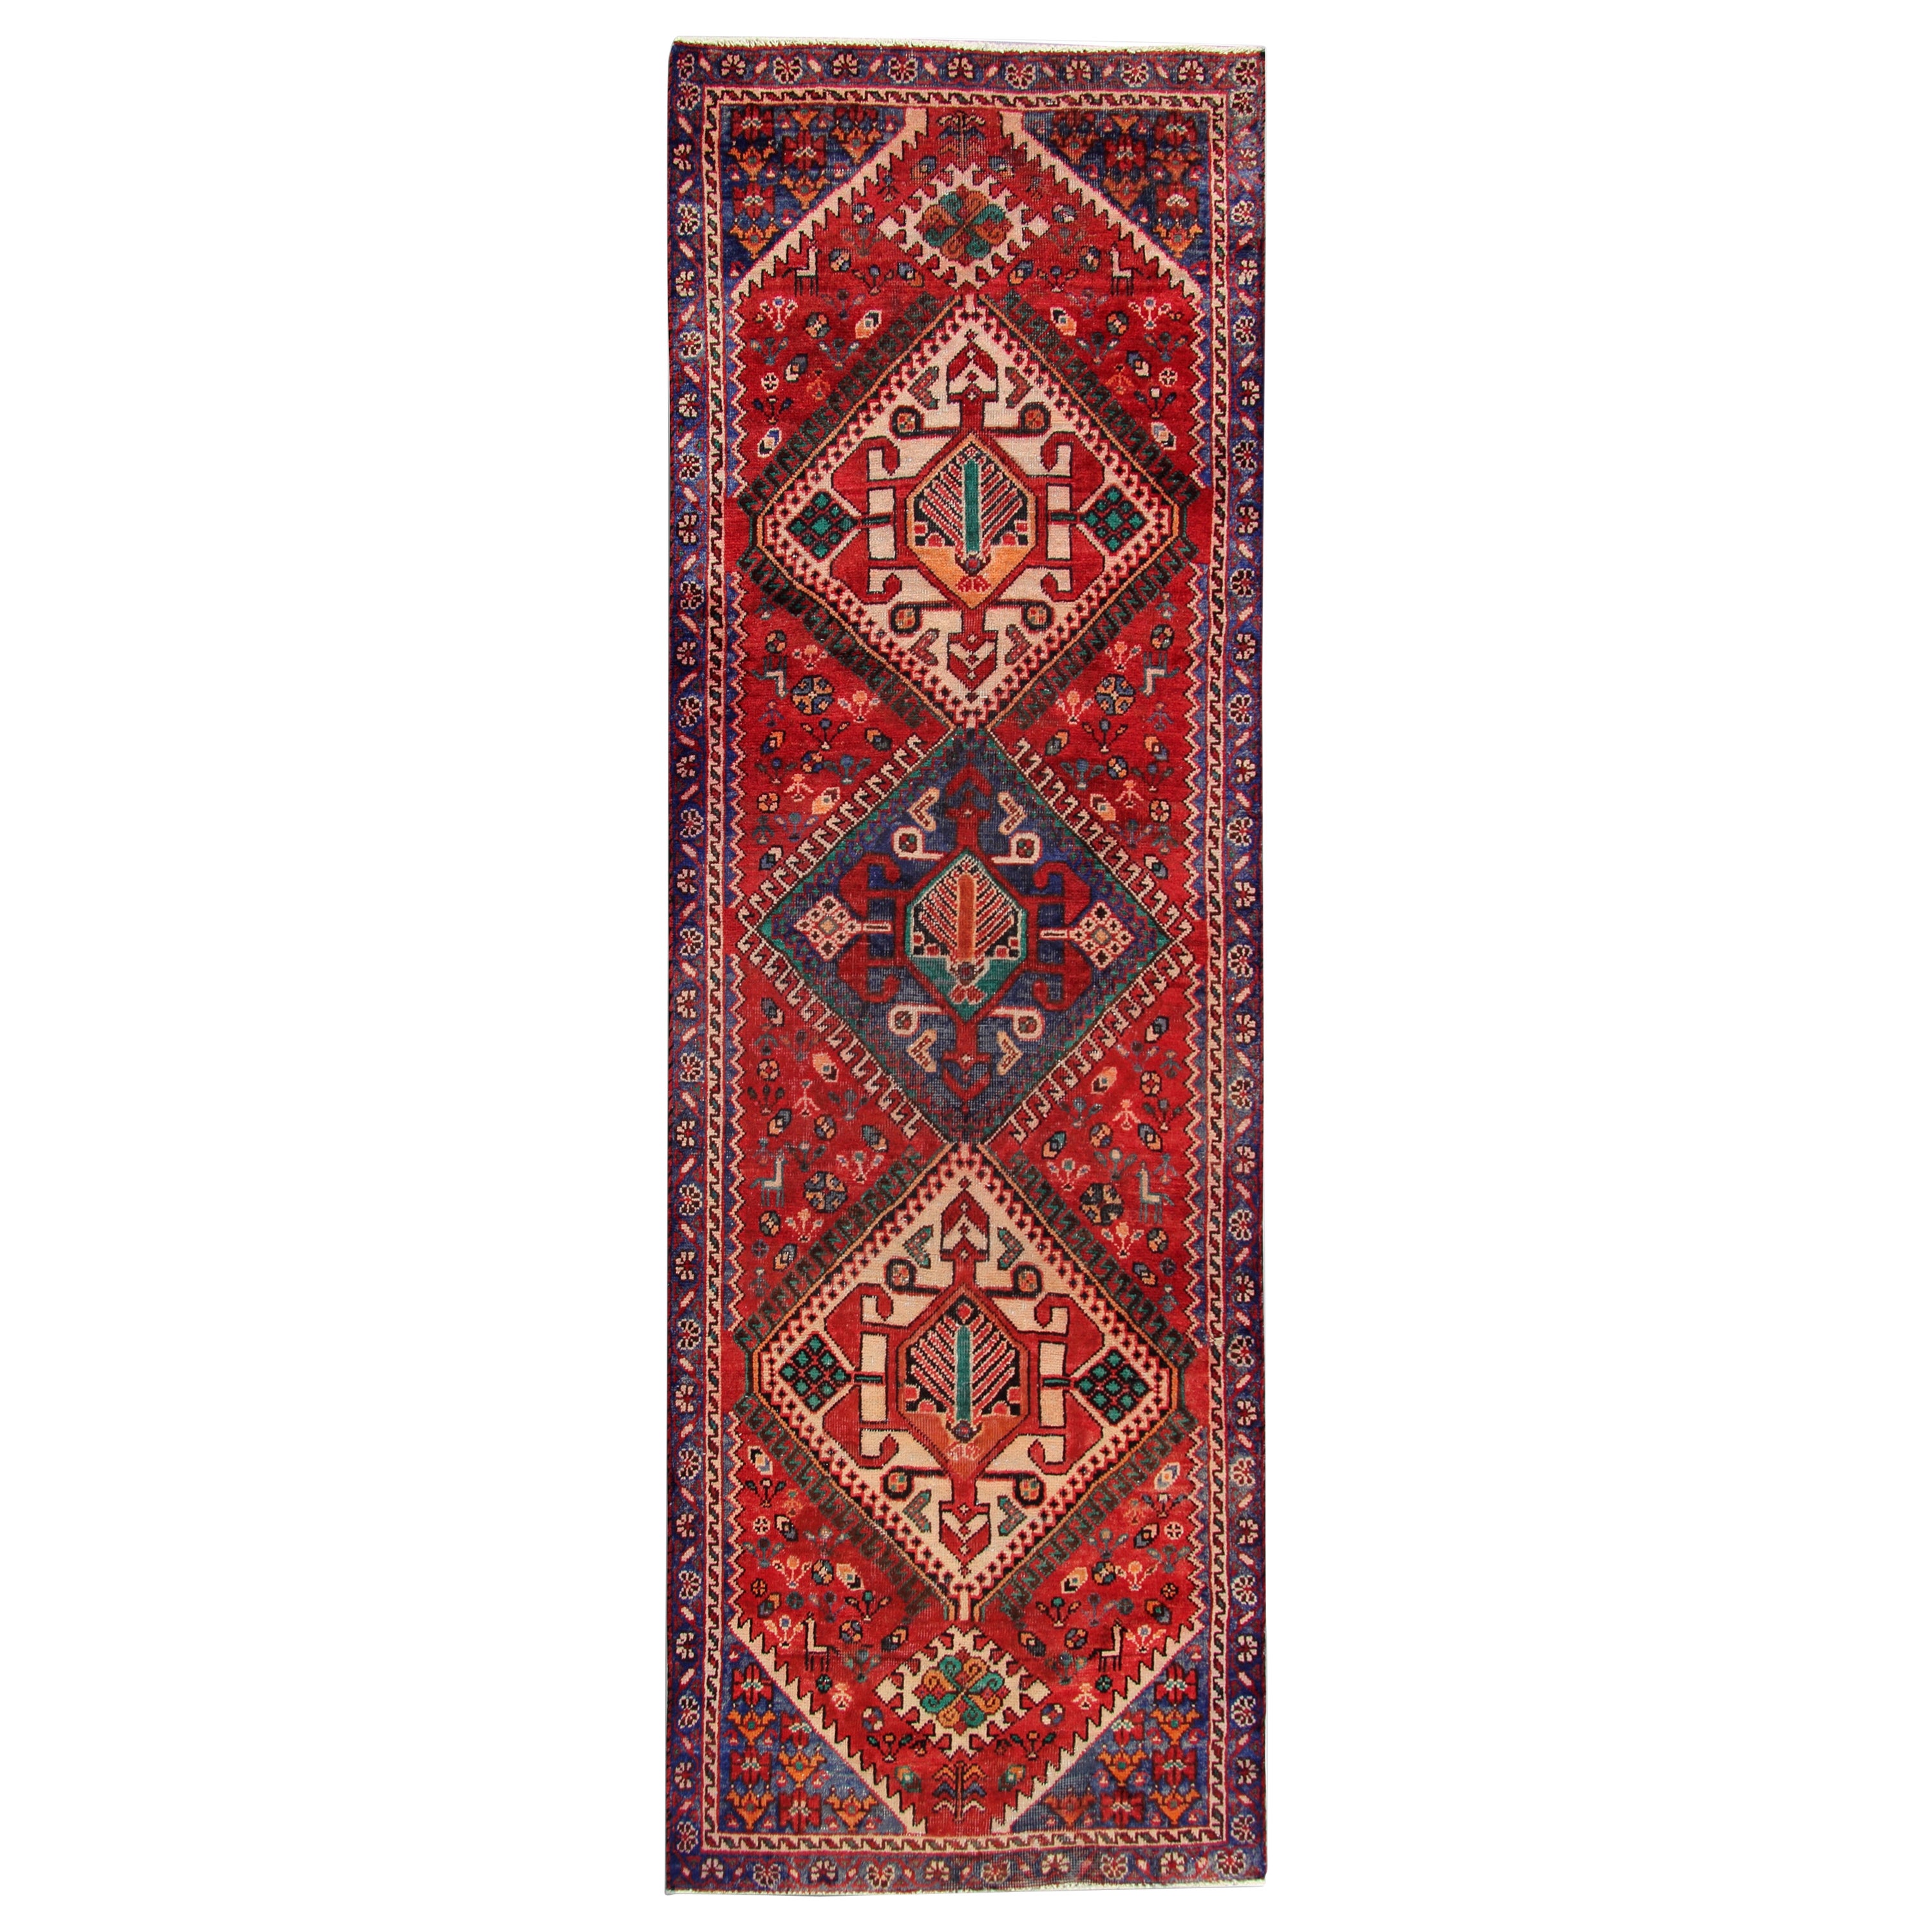 Rustikaler Vintage-Teppich aus roter Wolle, handgewebt, Stammeskunst